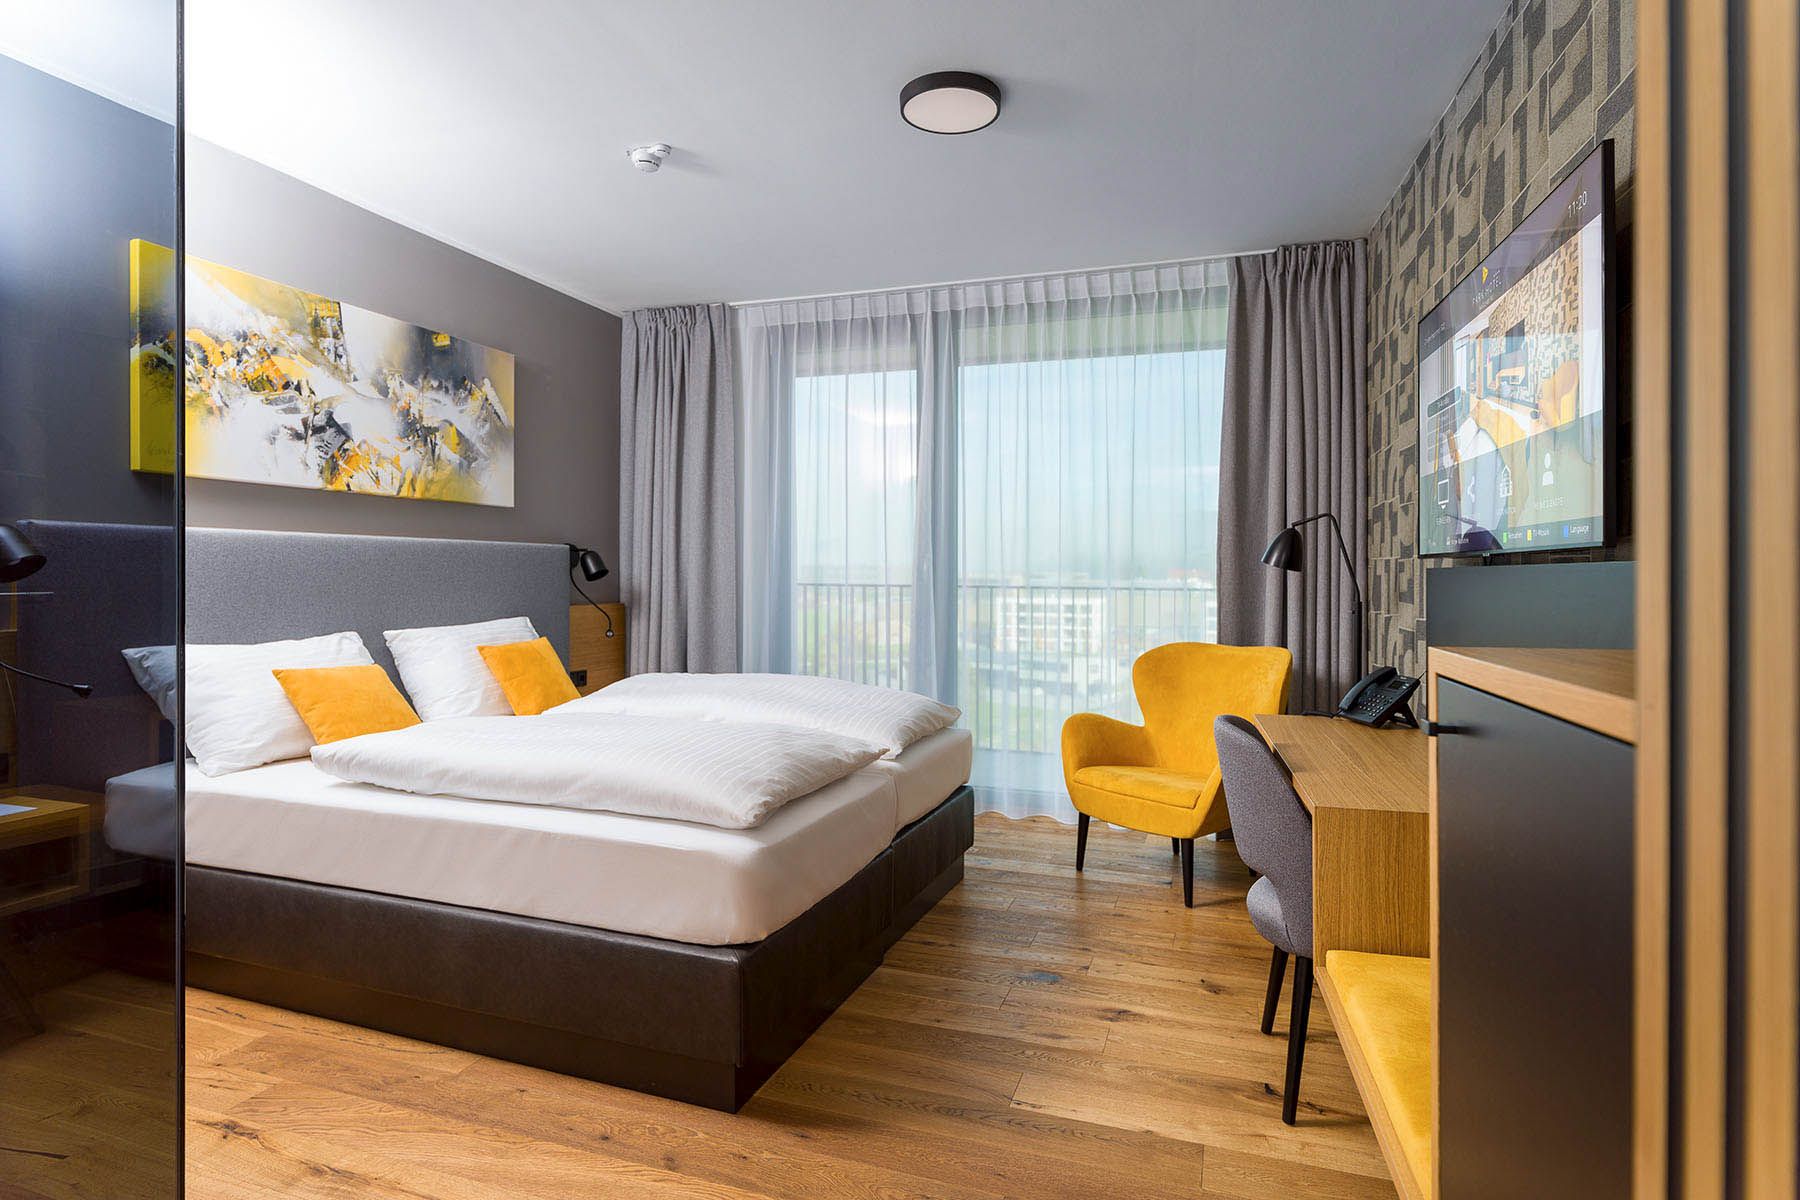 Hotelzimmer mit gelben Sesseln